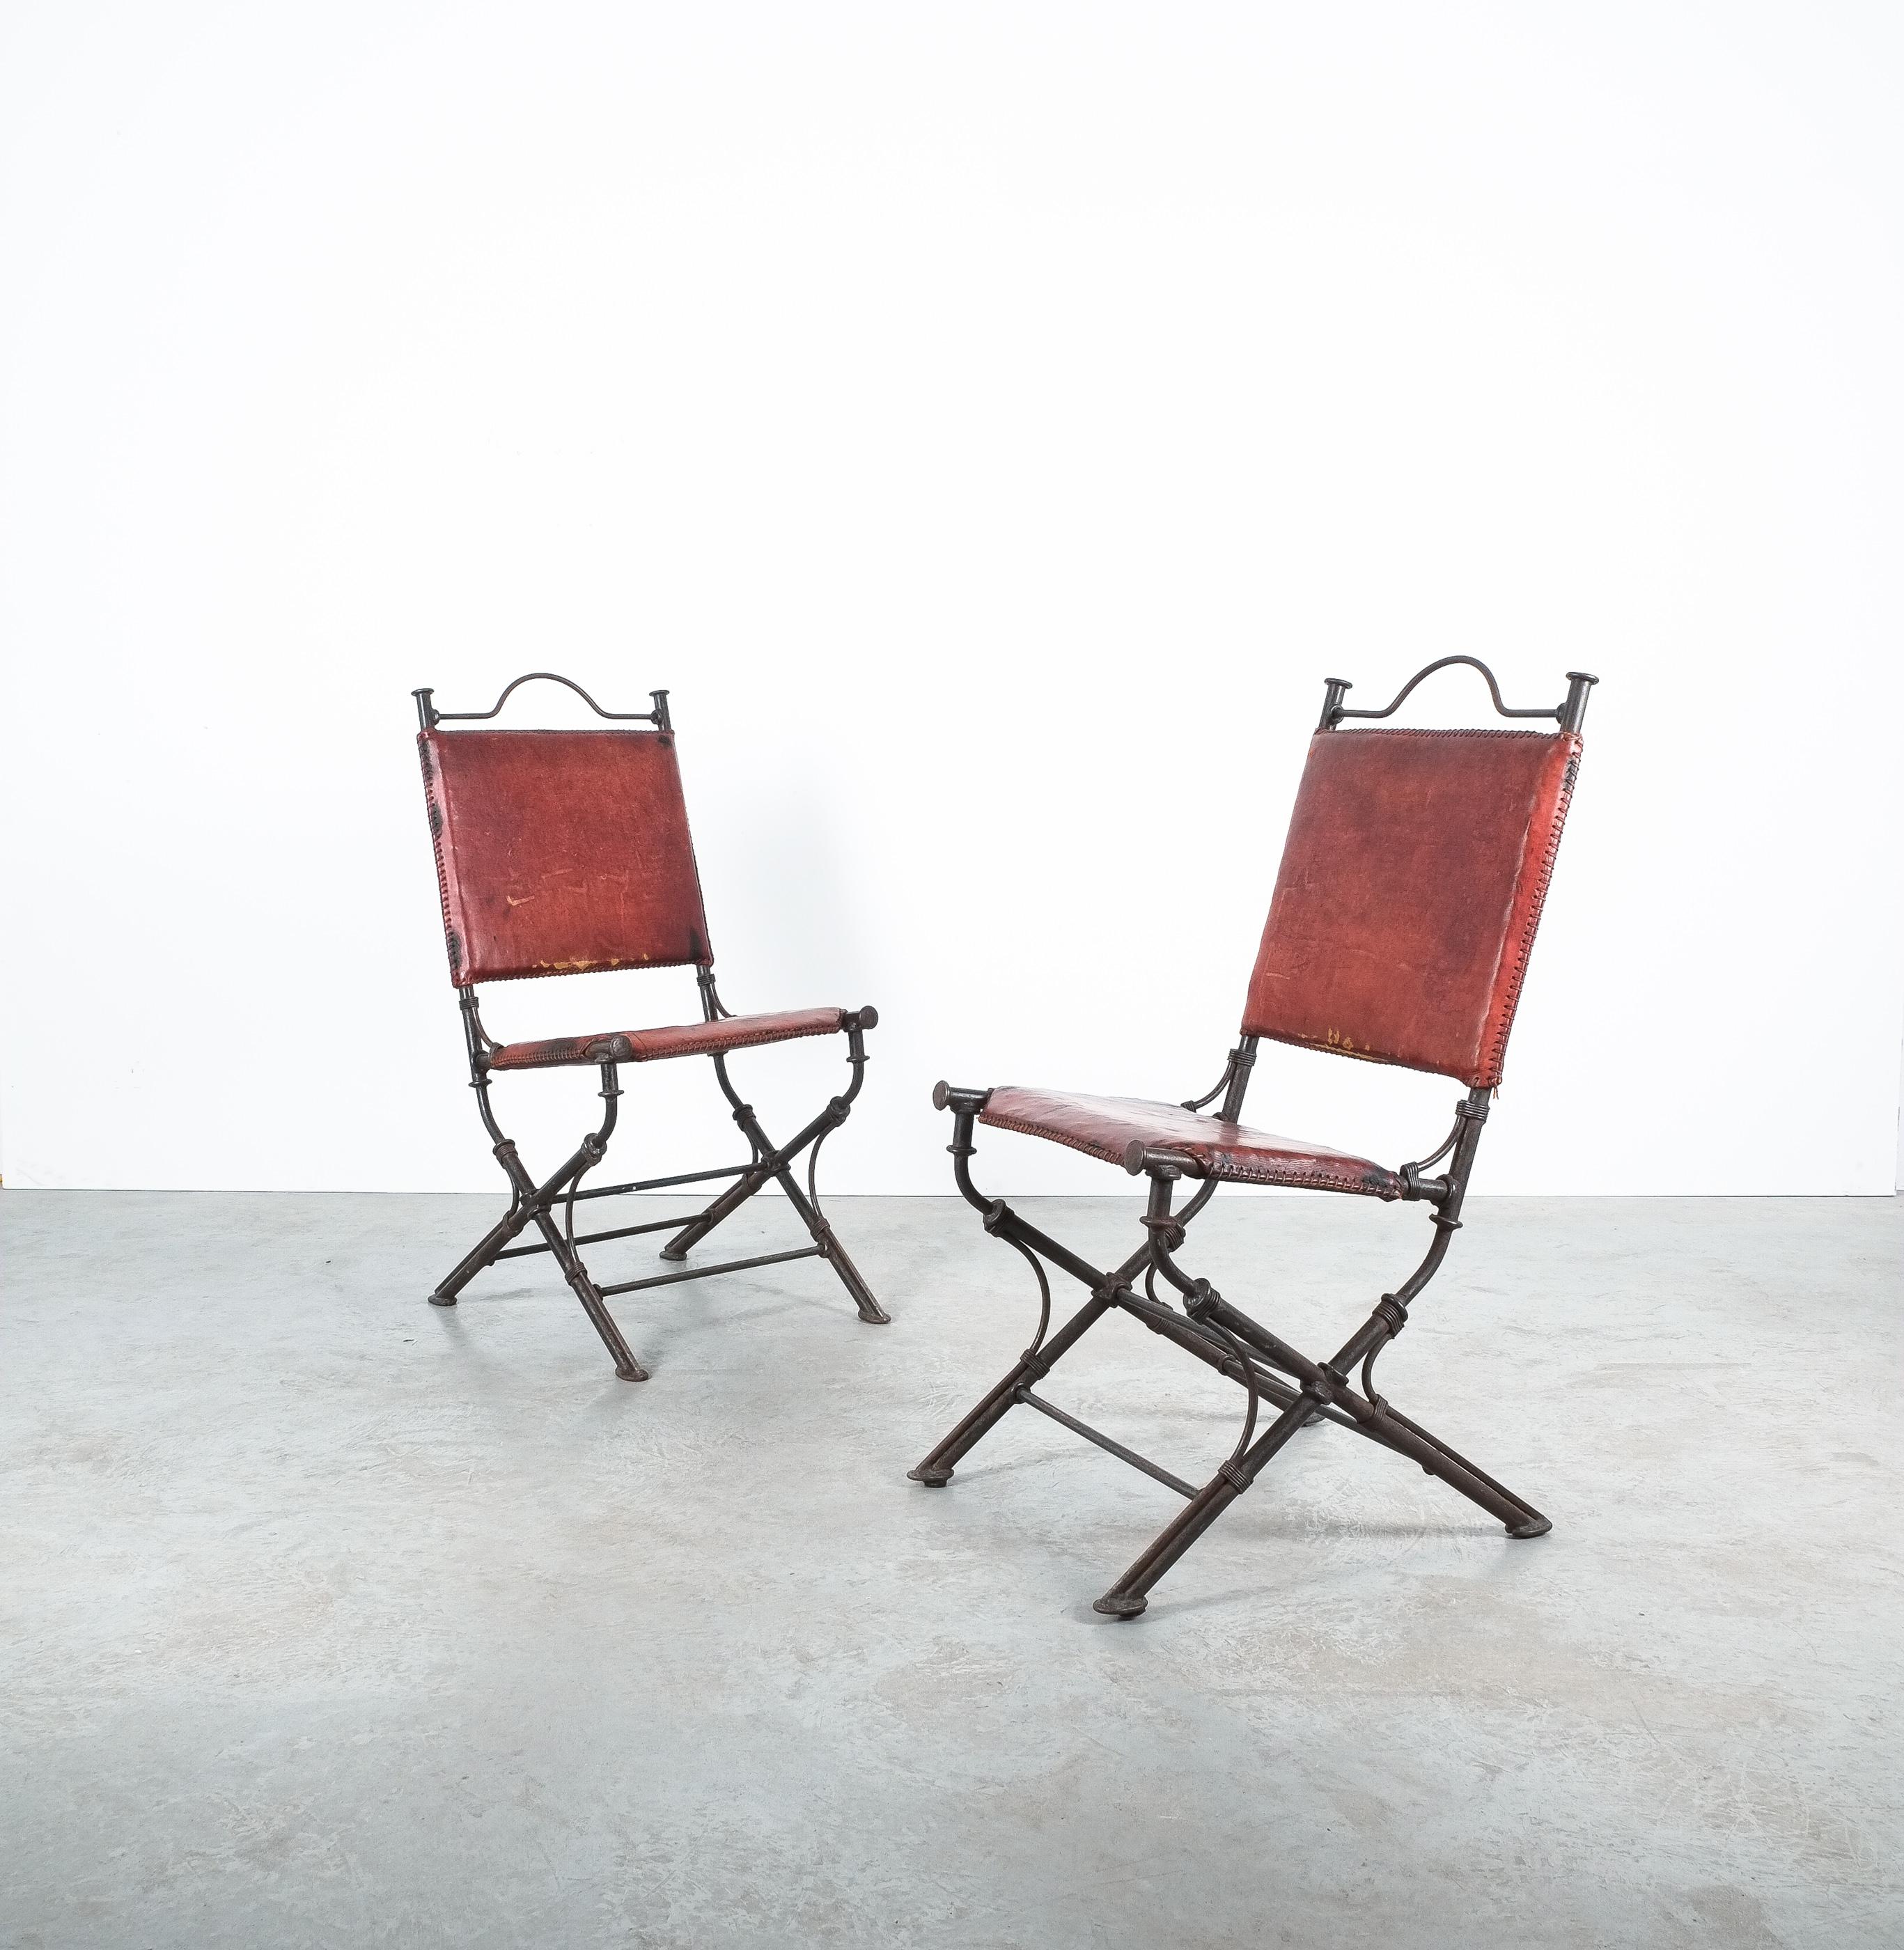 Schmiedeeiserne Gartenstühle aus Leder im Stil von Ilana Goor.

Schönes Paar Eisen, Leder Stühle in einem 19. Garten Klappstuhl Art. Er ist in der Tat robust, 12,5 kg pro Stuhl schwer und sorgfältig verarbeitet. Hochwertiges dickes Leder mit